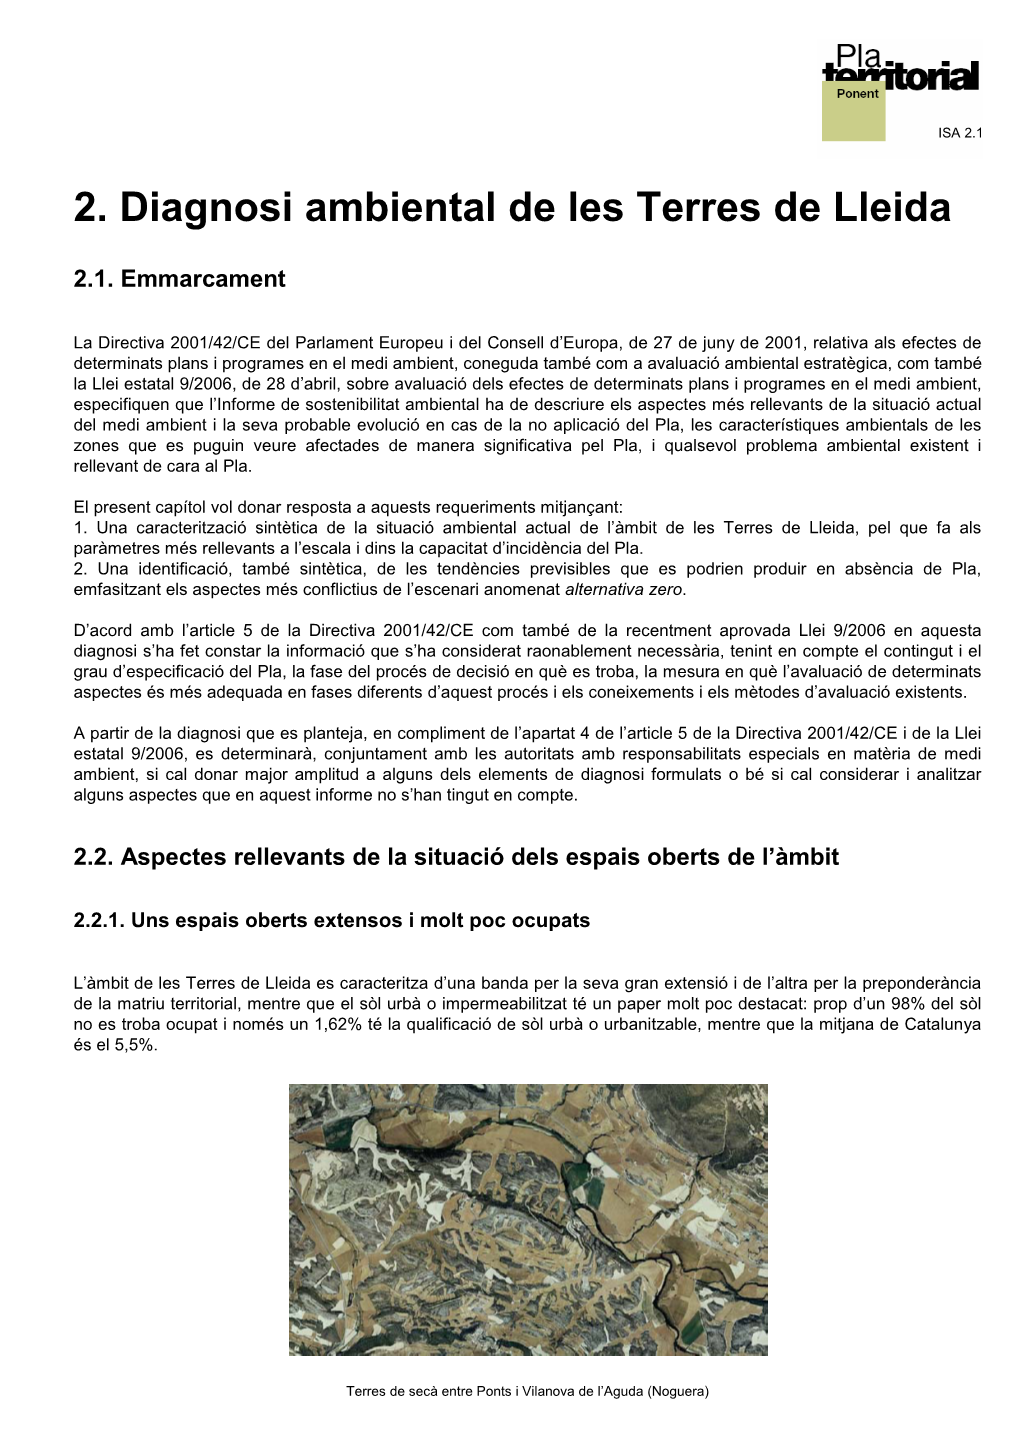 2. Diagnosi Ambiental De Les Terres De Lleida